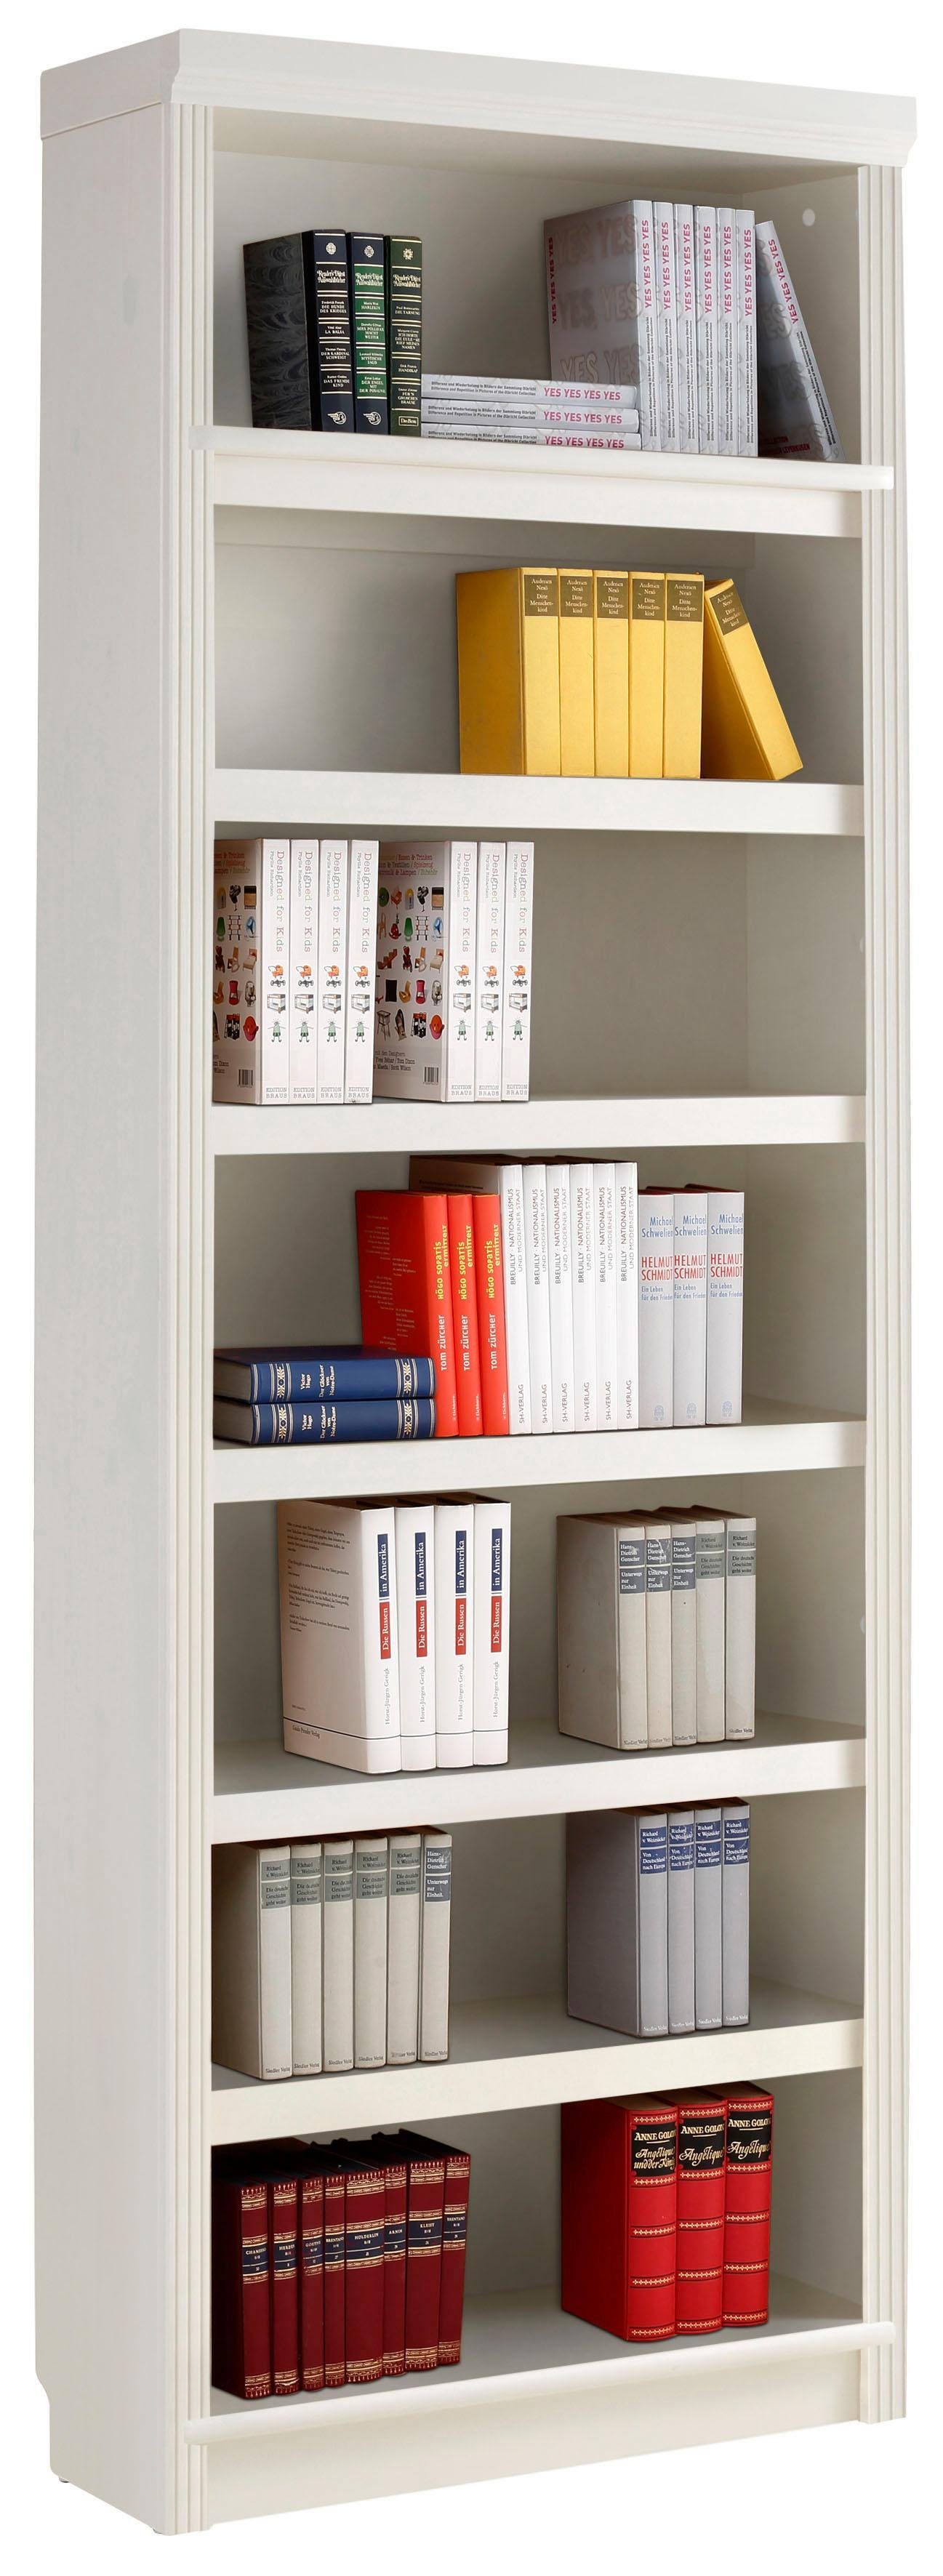 Home affaire Bücherregal Soeren, viel Höhen mit 2 Stauraum in weiß und 2 Tiefen